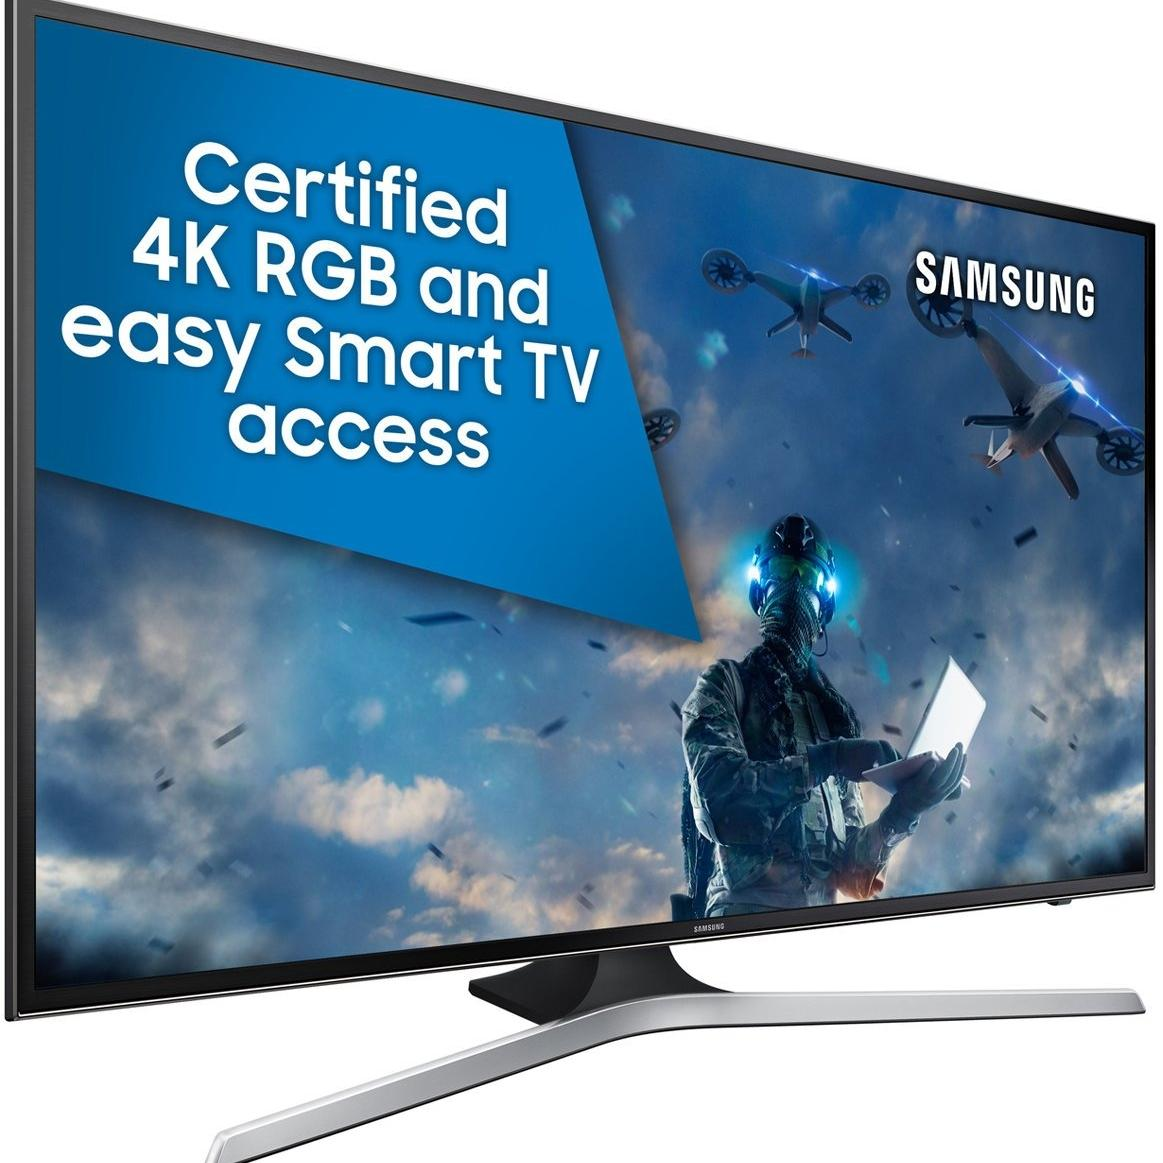 Samsung 43 Inch Full HD Led TV UA43M5100